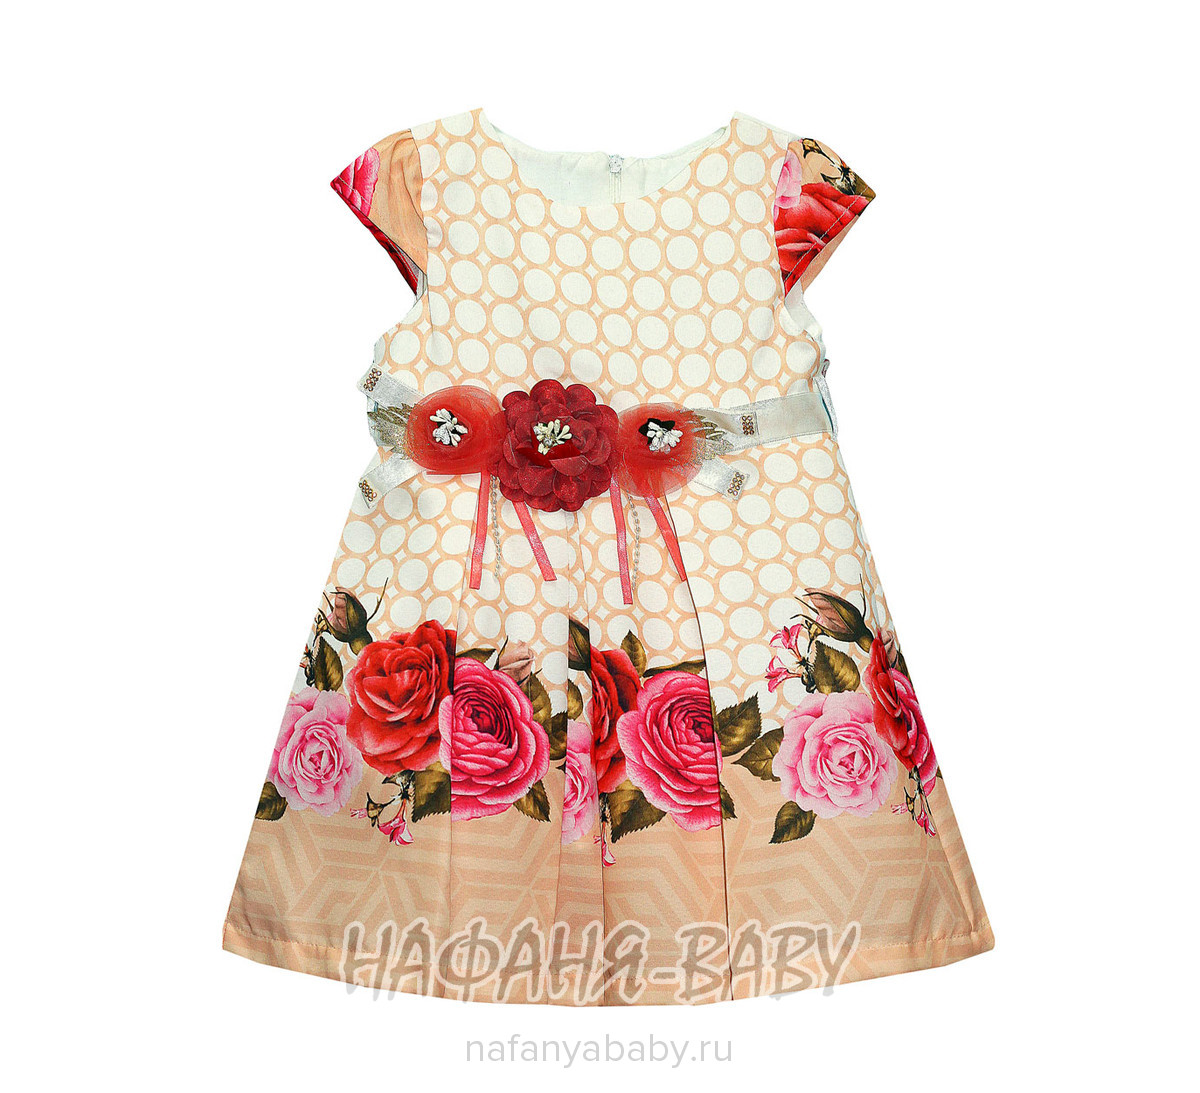 Детское нарядное платье Miss GOLDEN, купить в интернет магазине Нафаня. арт: 218, цвет персиковый